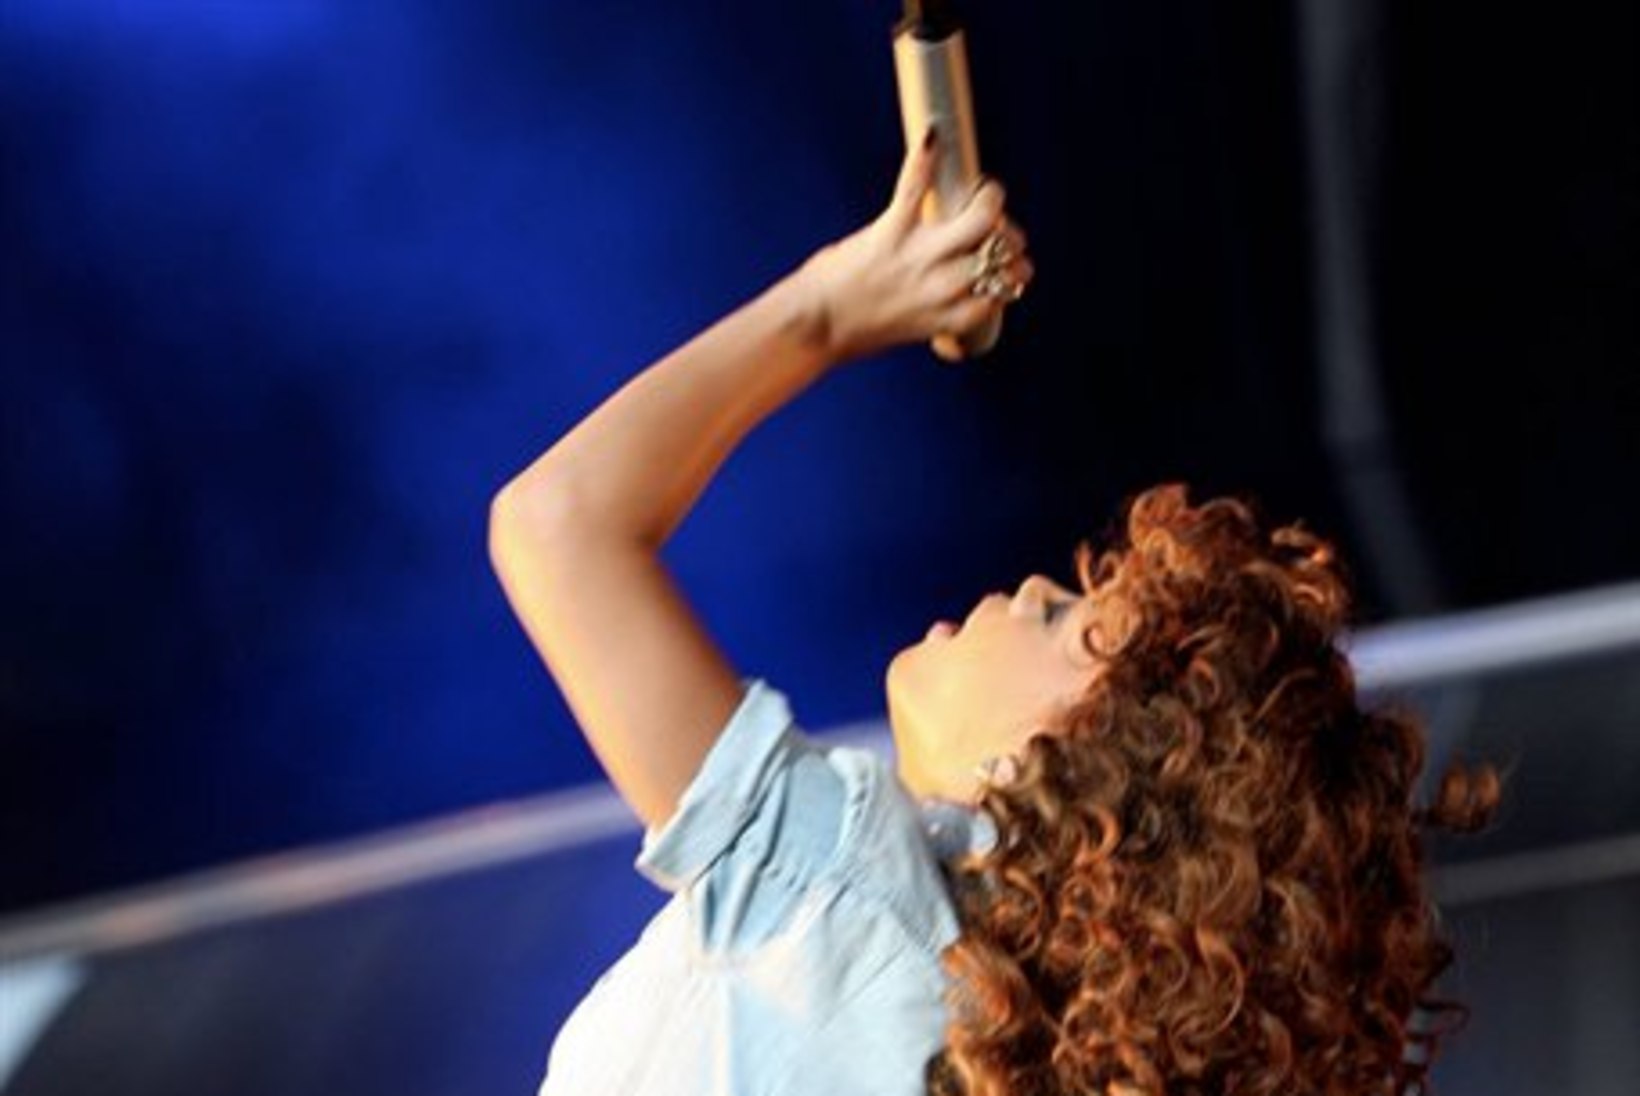 FOTOD: Rihanna demonstreeris nappi lavariietust!